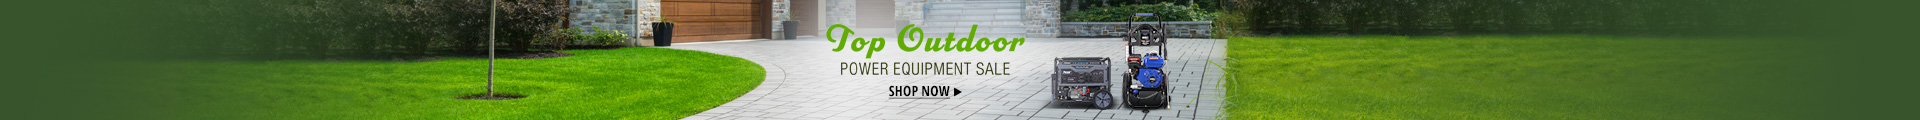 Top Outdoor Power Equipment Sale